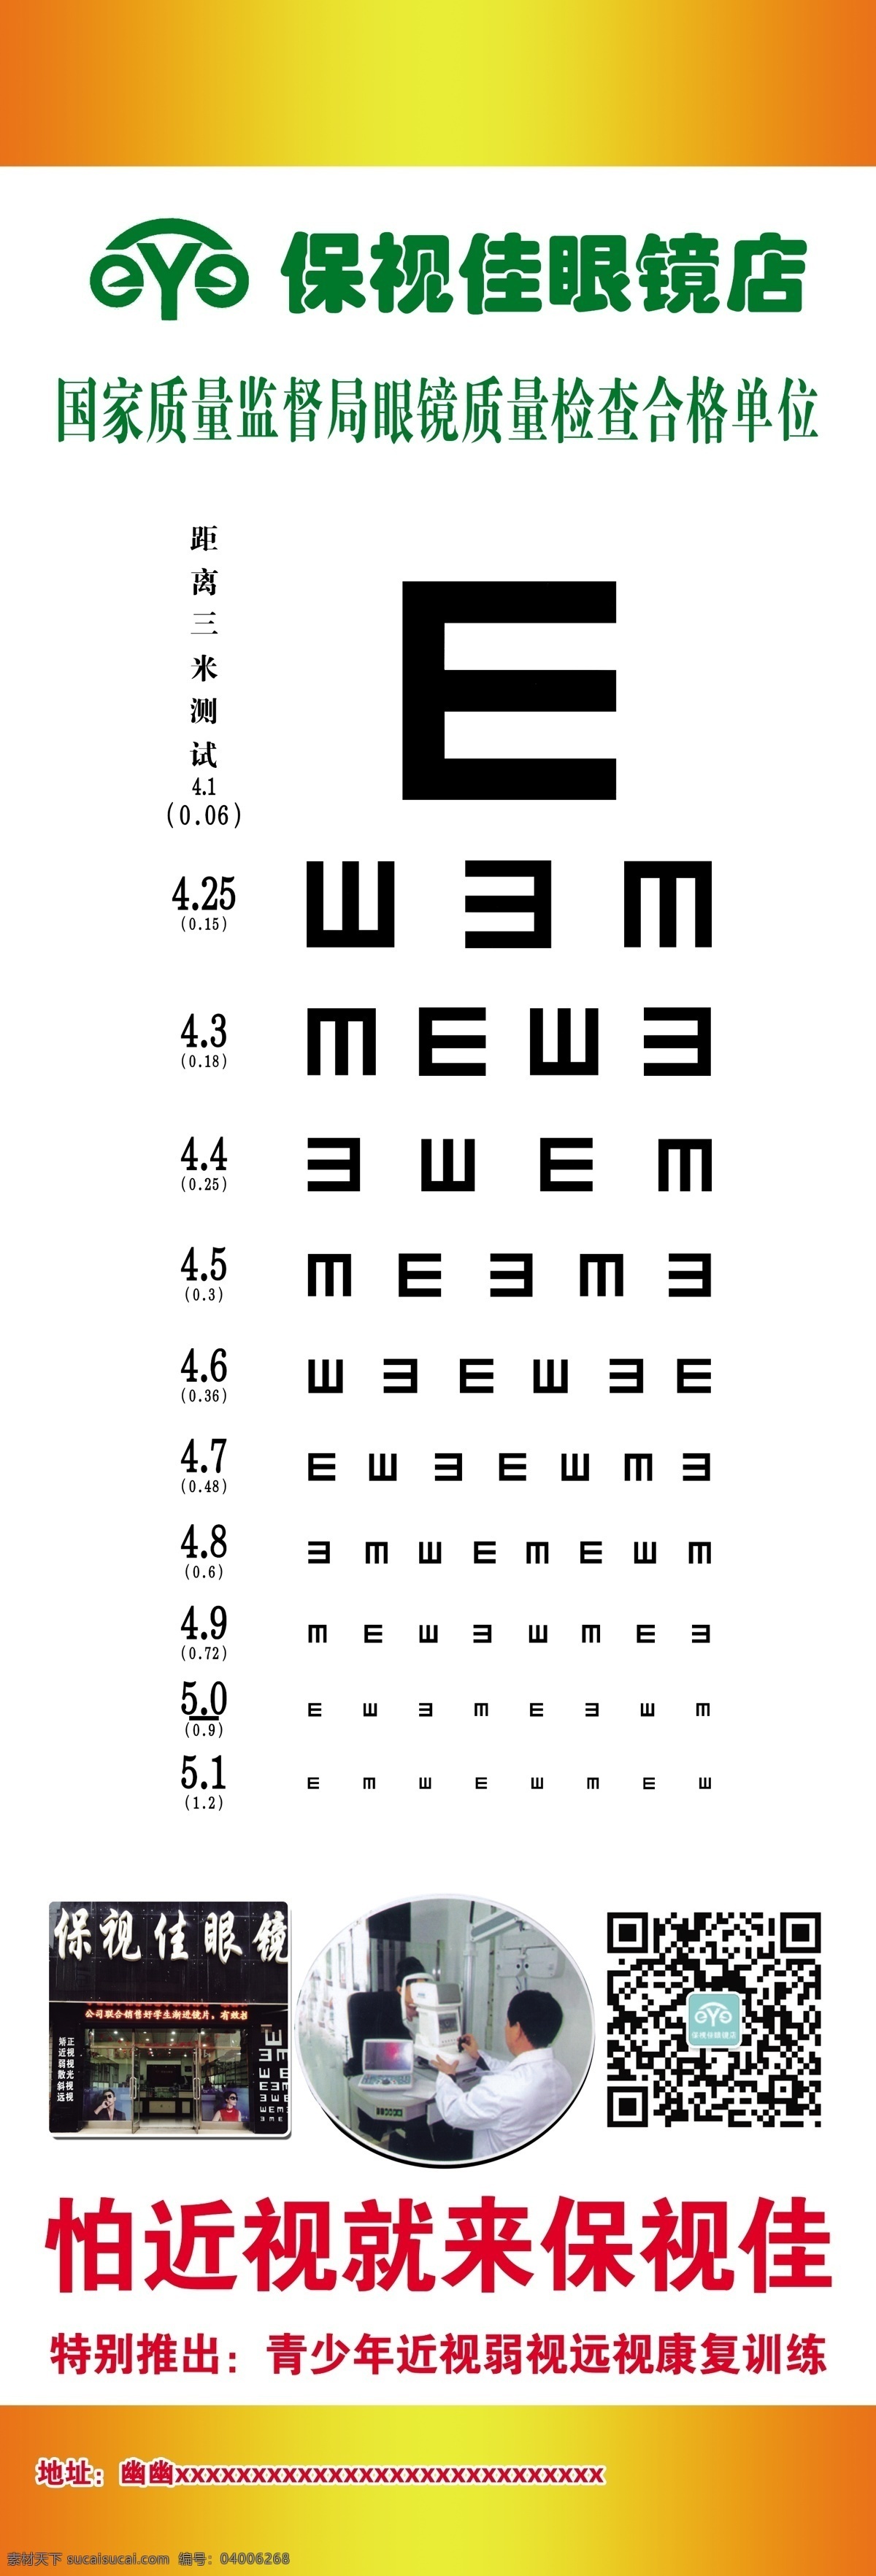 保 视 佳 视力表 展架 保视佳 眼力表 近视